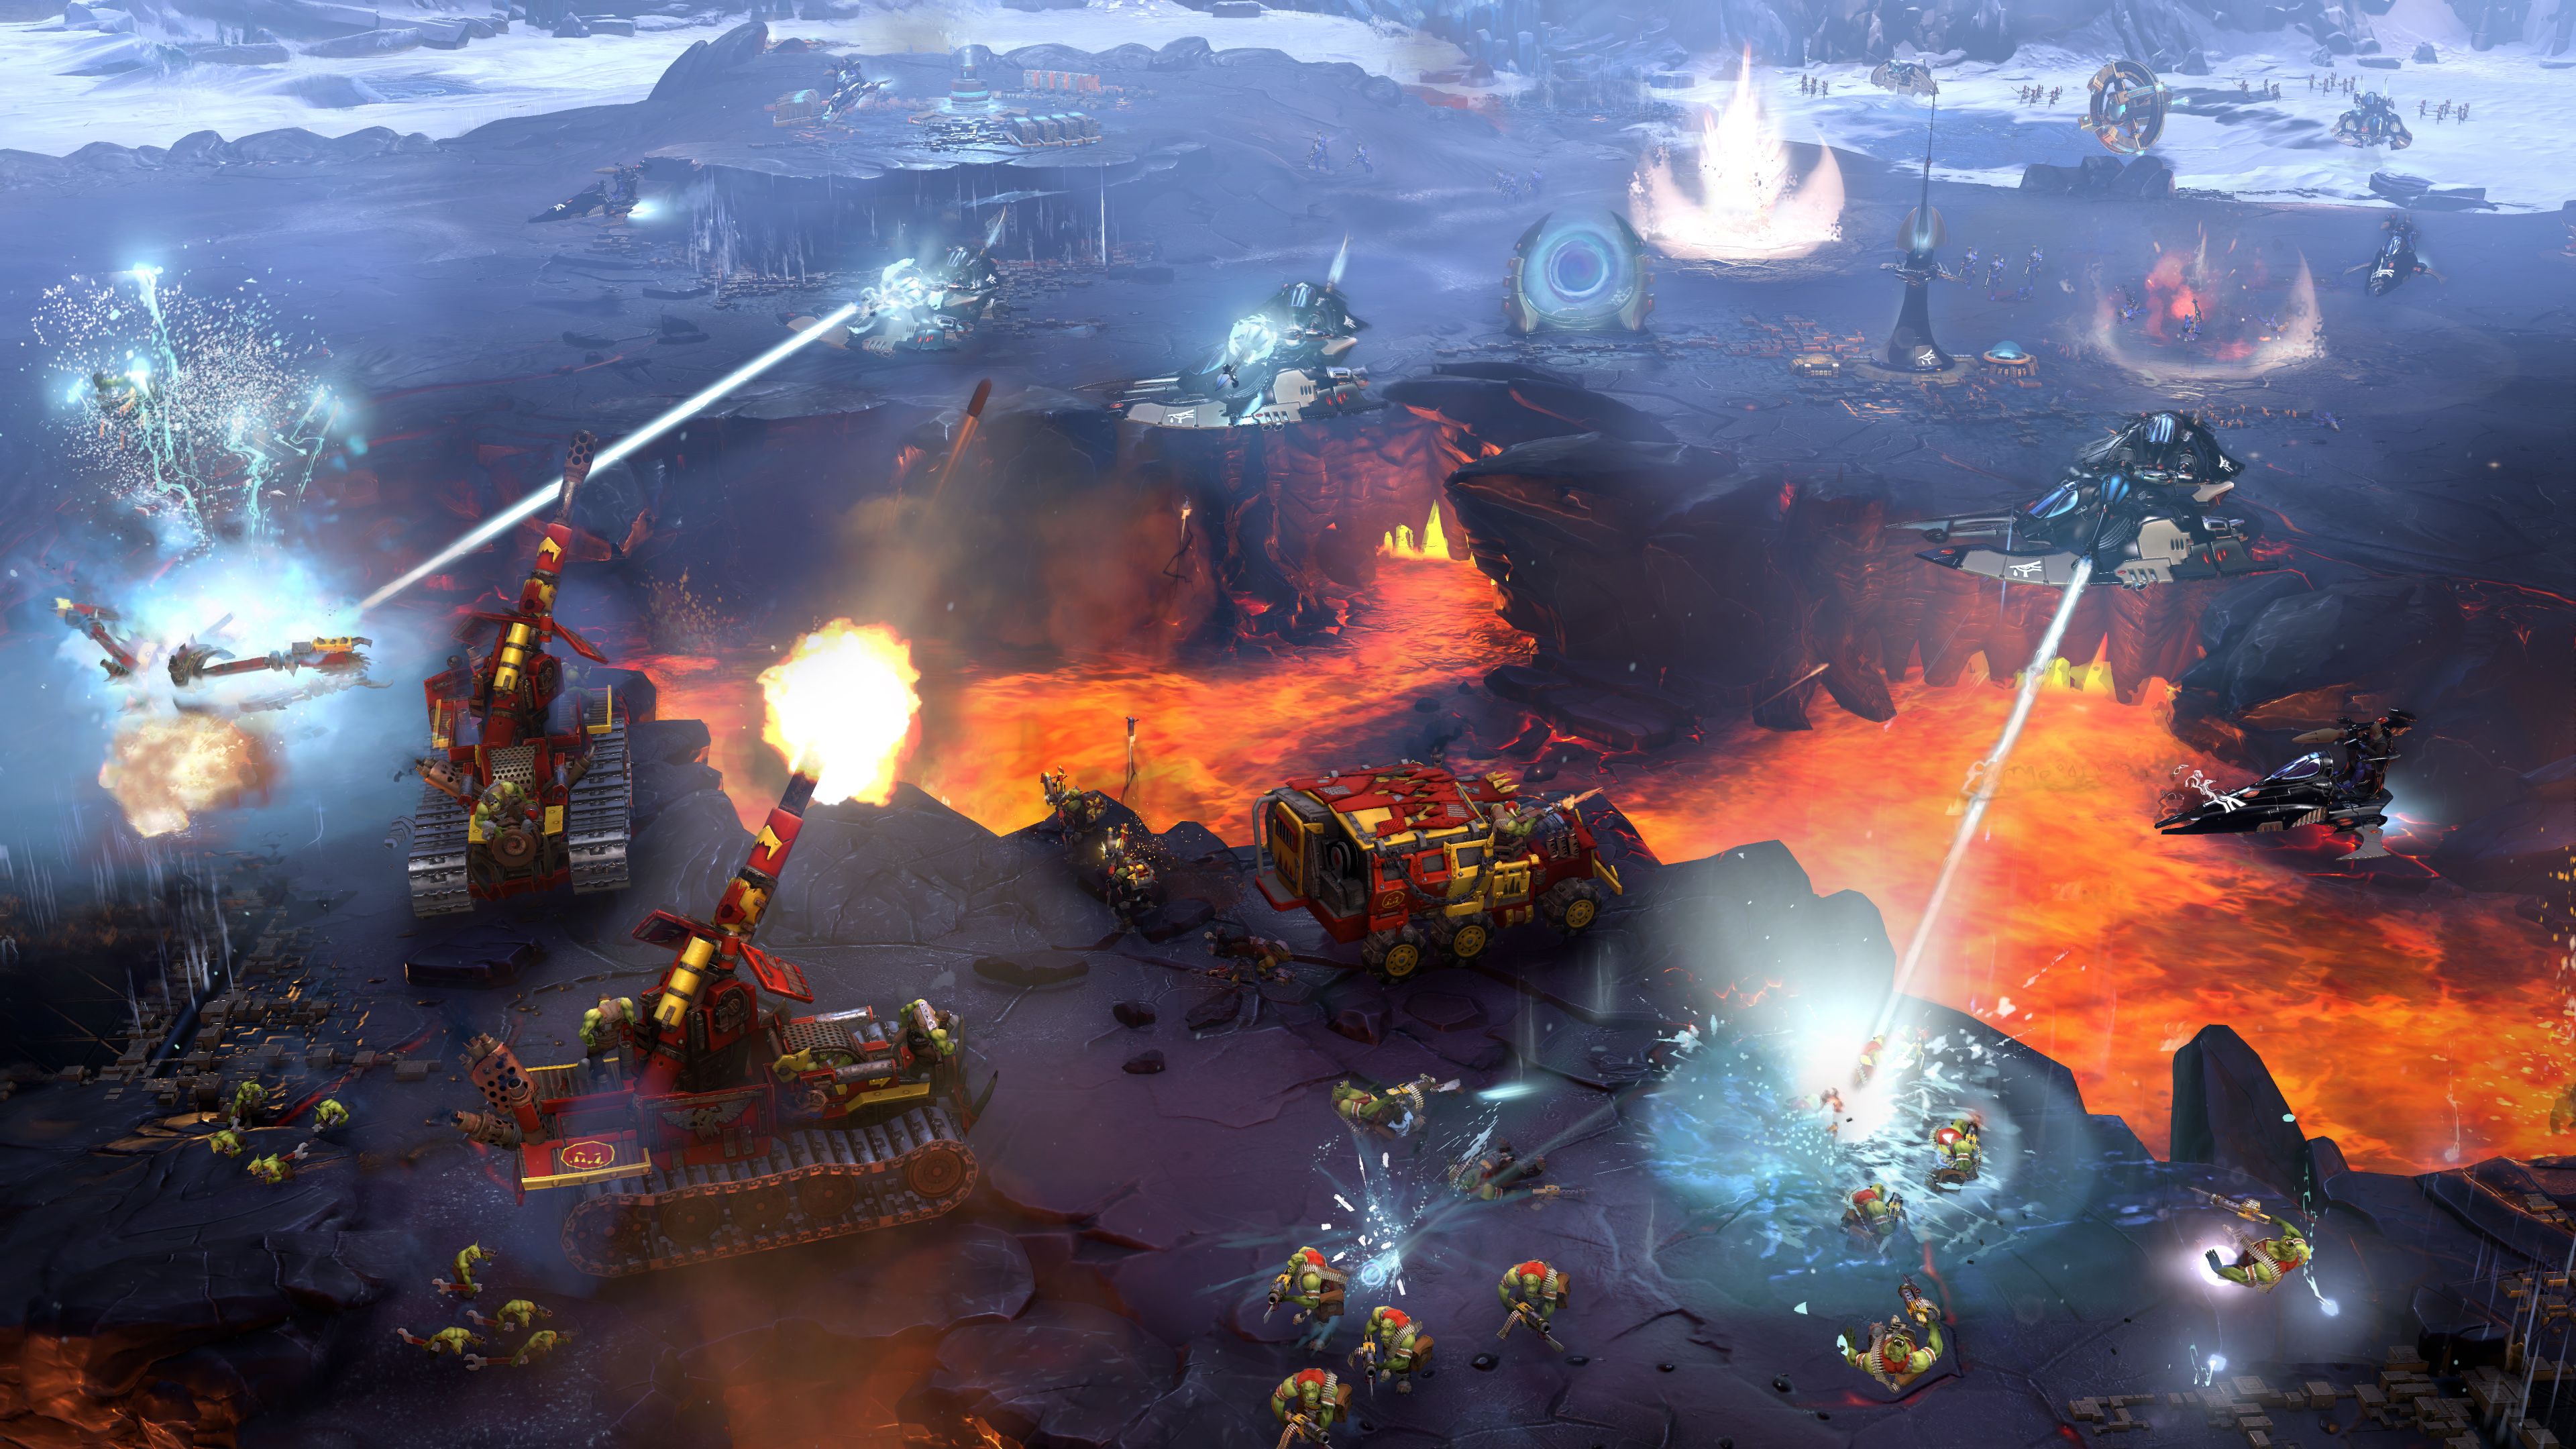 'Bom tấn' game chiến thuật  Dawn of War III ra mắt vào tháng 4, yêu cầu 50GB ổ cứng